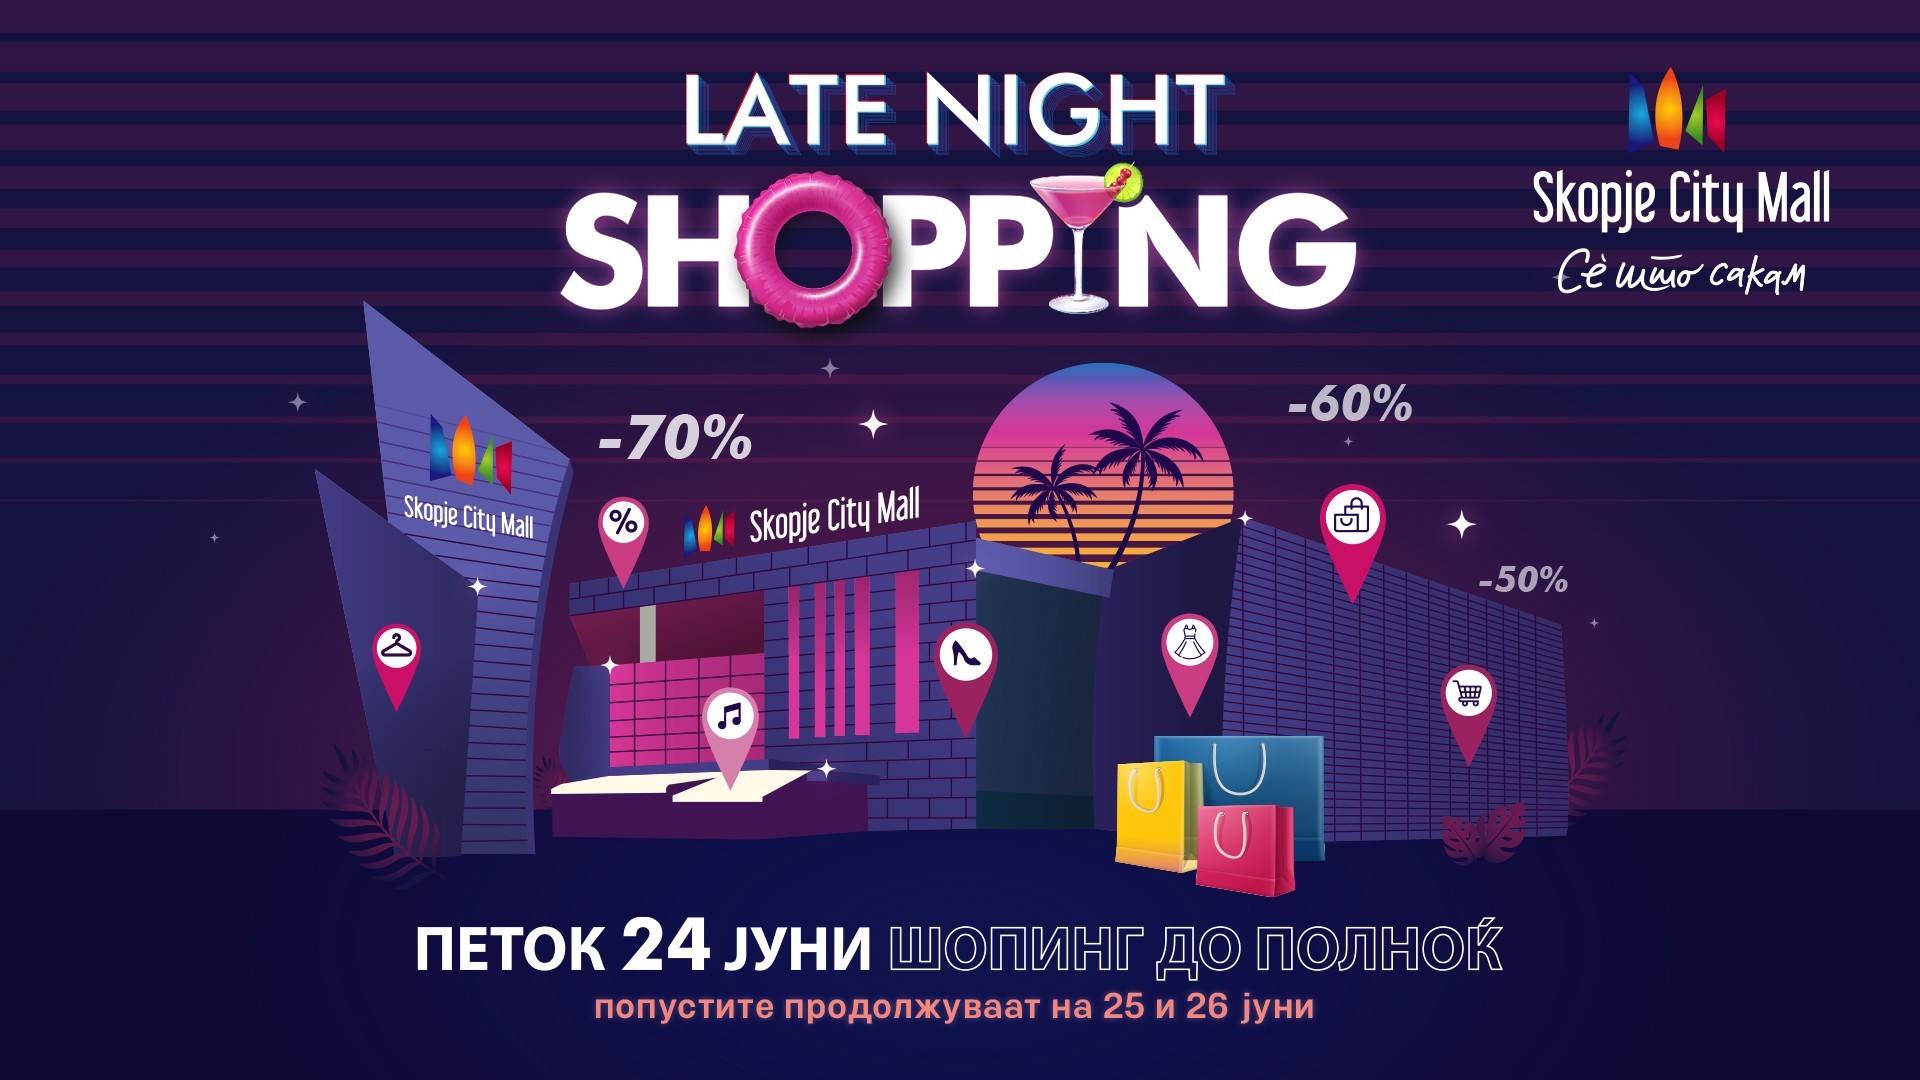 Скопје Сити Мол ве советува како да извлечете максимум од Late Night Shopping во 5 чекори